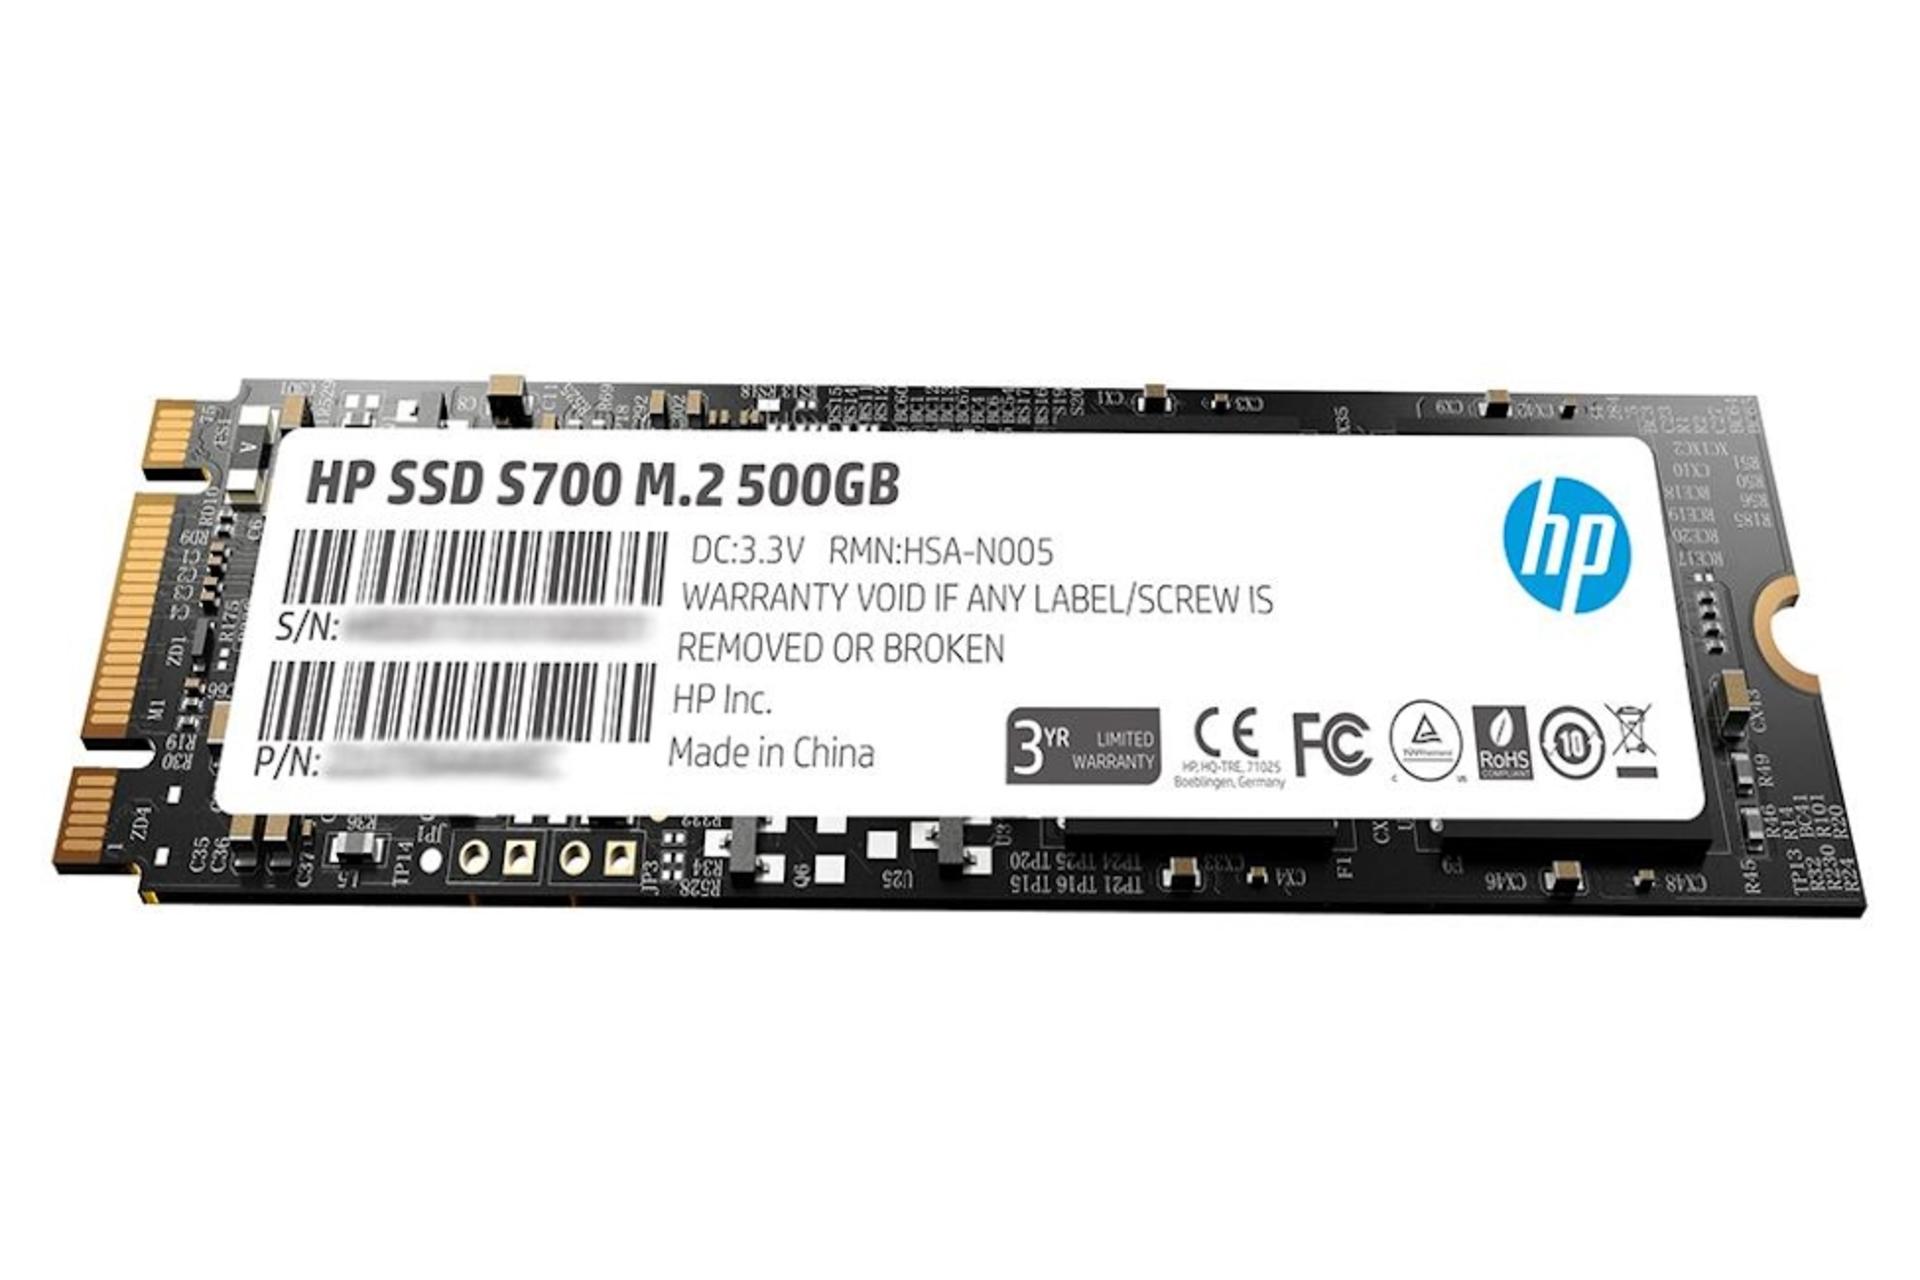 نمای روبرو SSD اچ پی HP S700 SATA M.2 500GB ظرفیت 500 گیگابایت